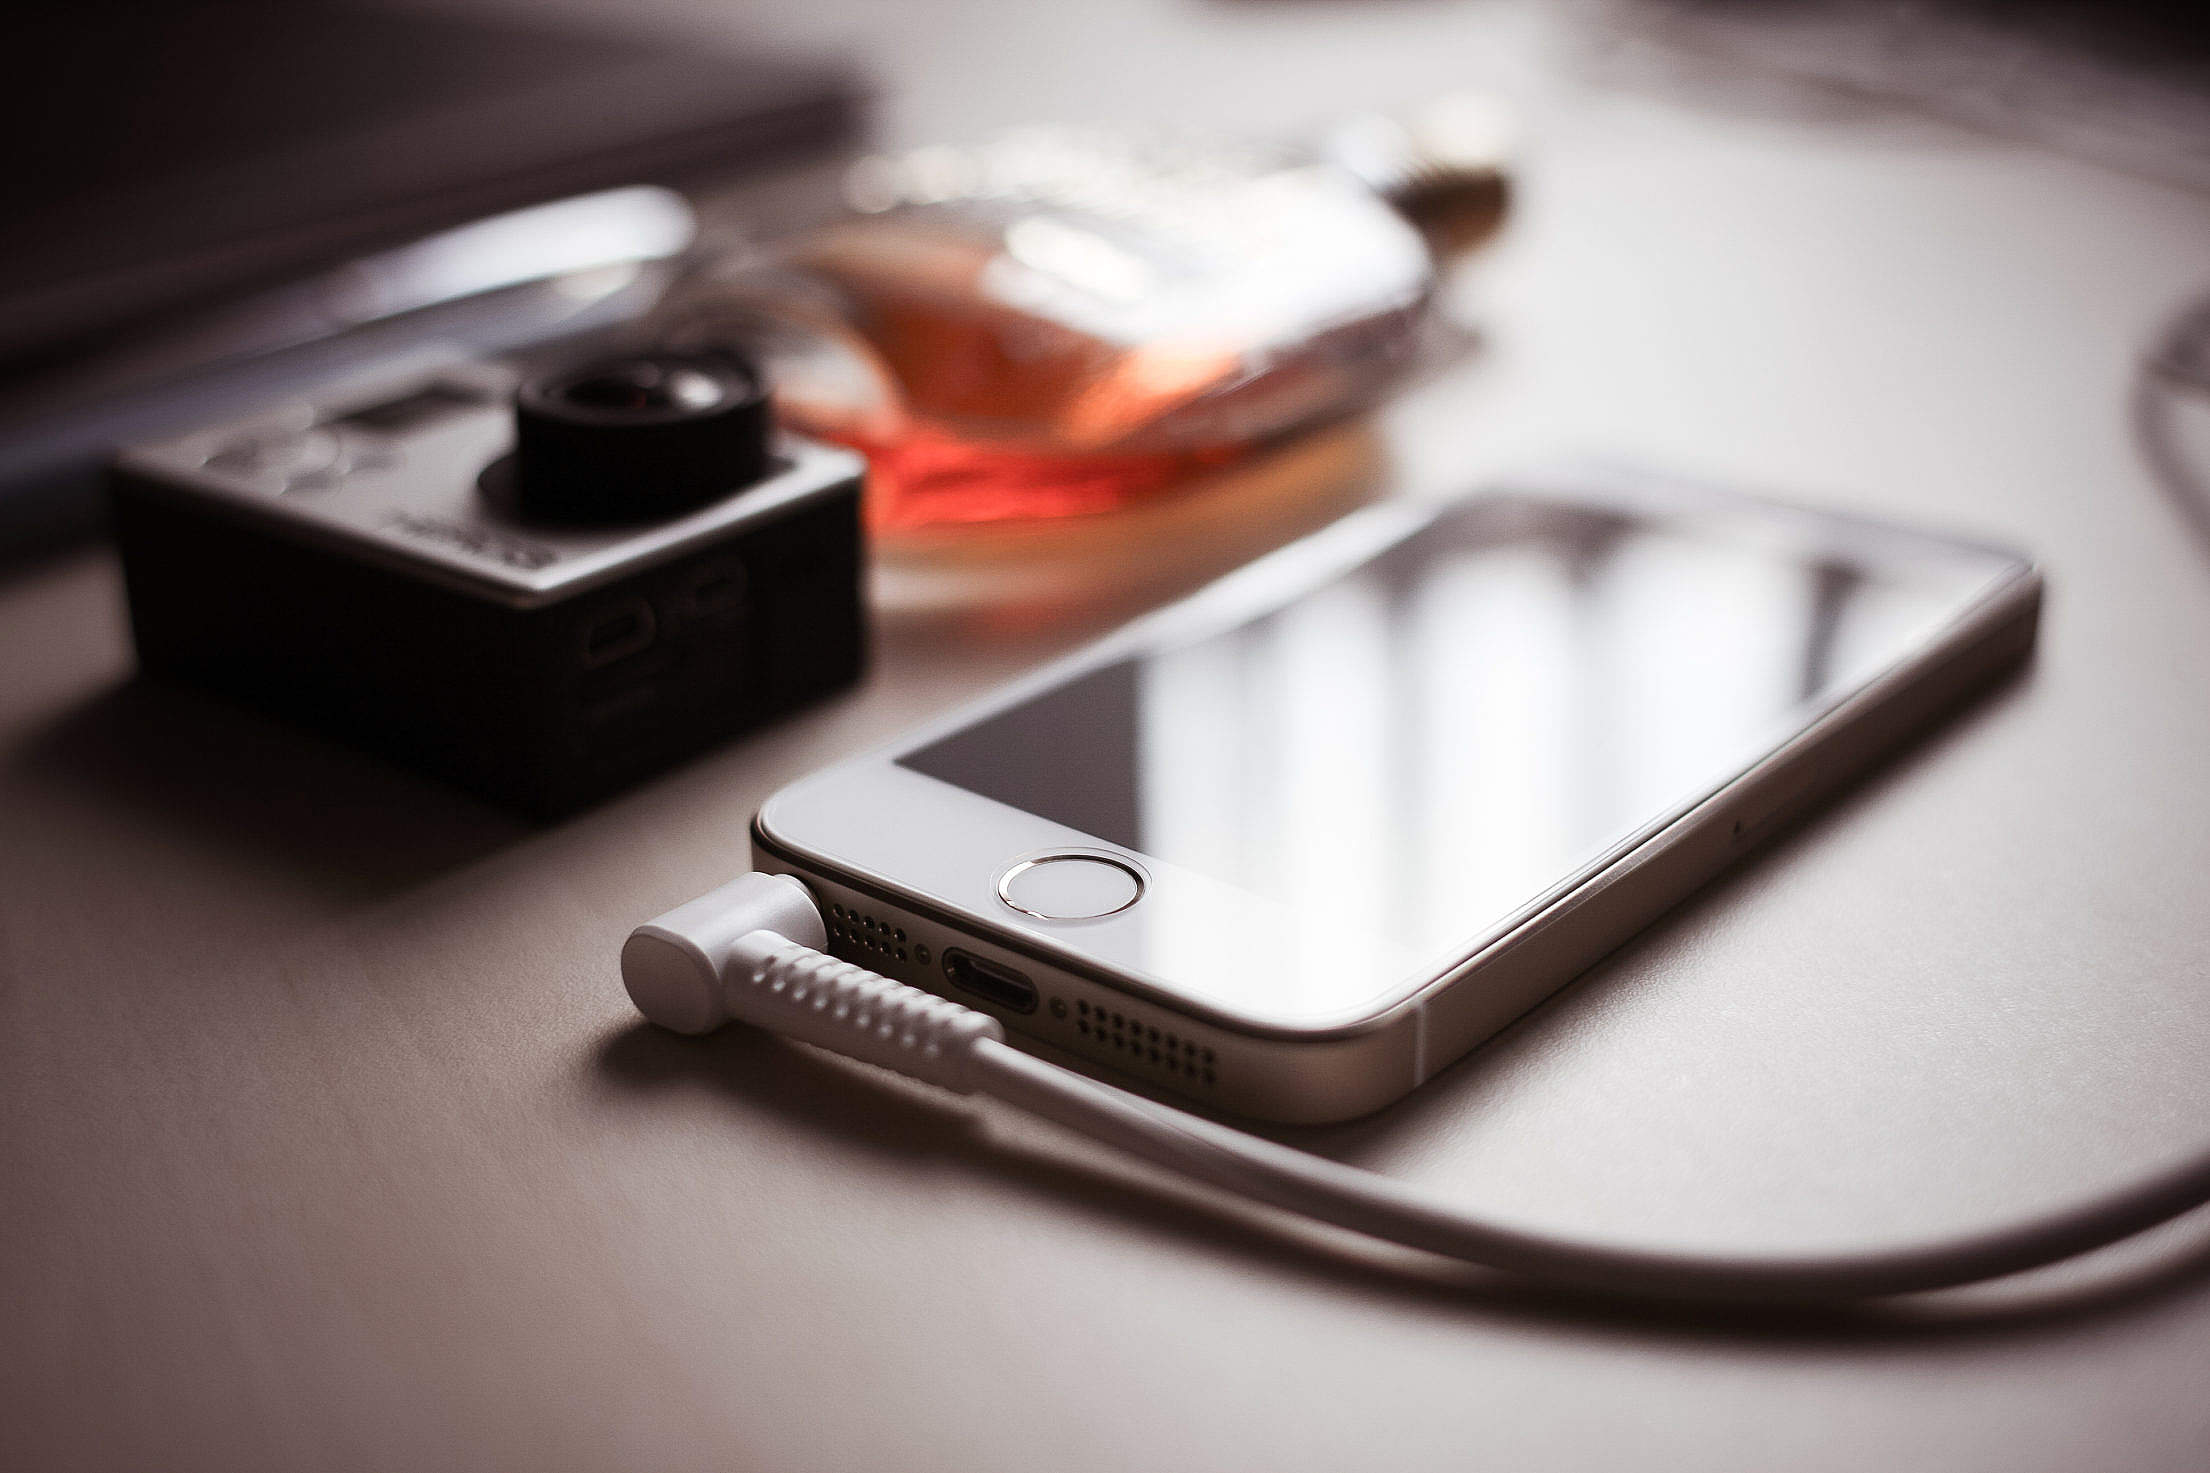 iPhone 5s with Headphones Jack Free Stock Photo